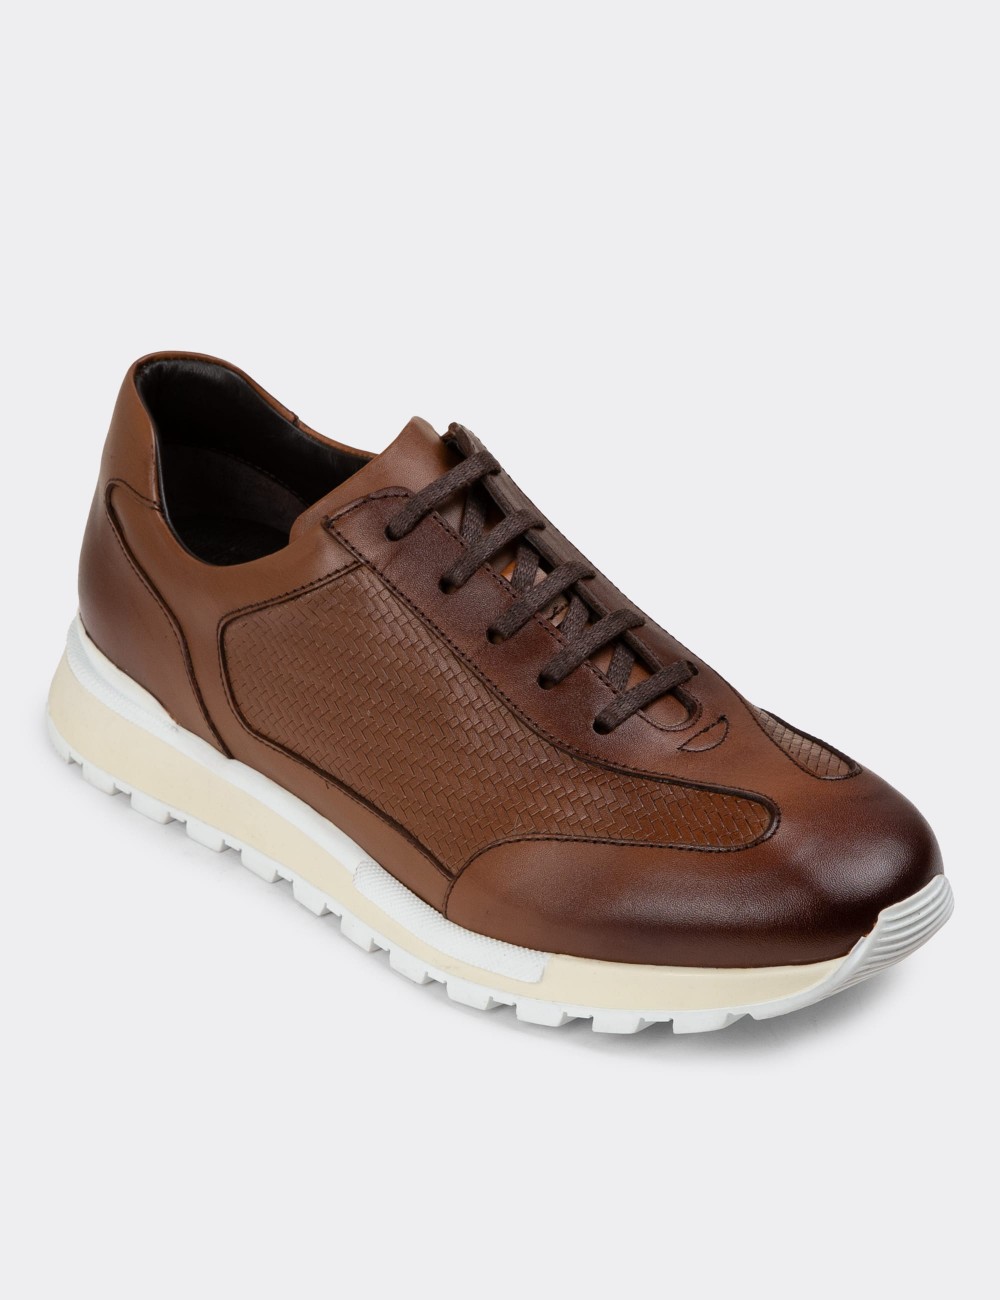 Tan Leather Sneakers - 01729MTBAT02